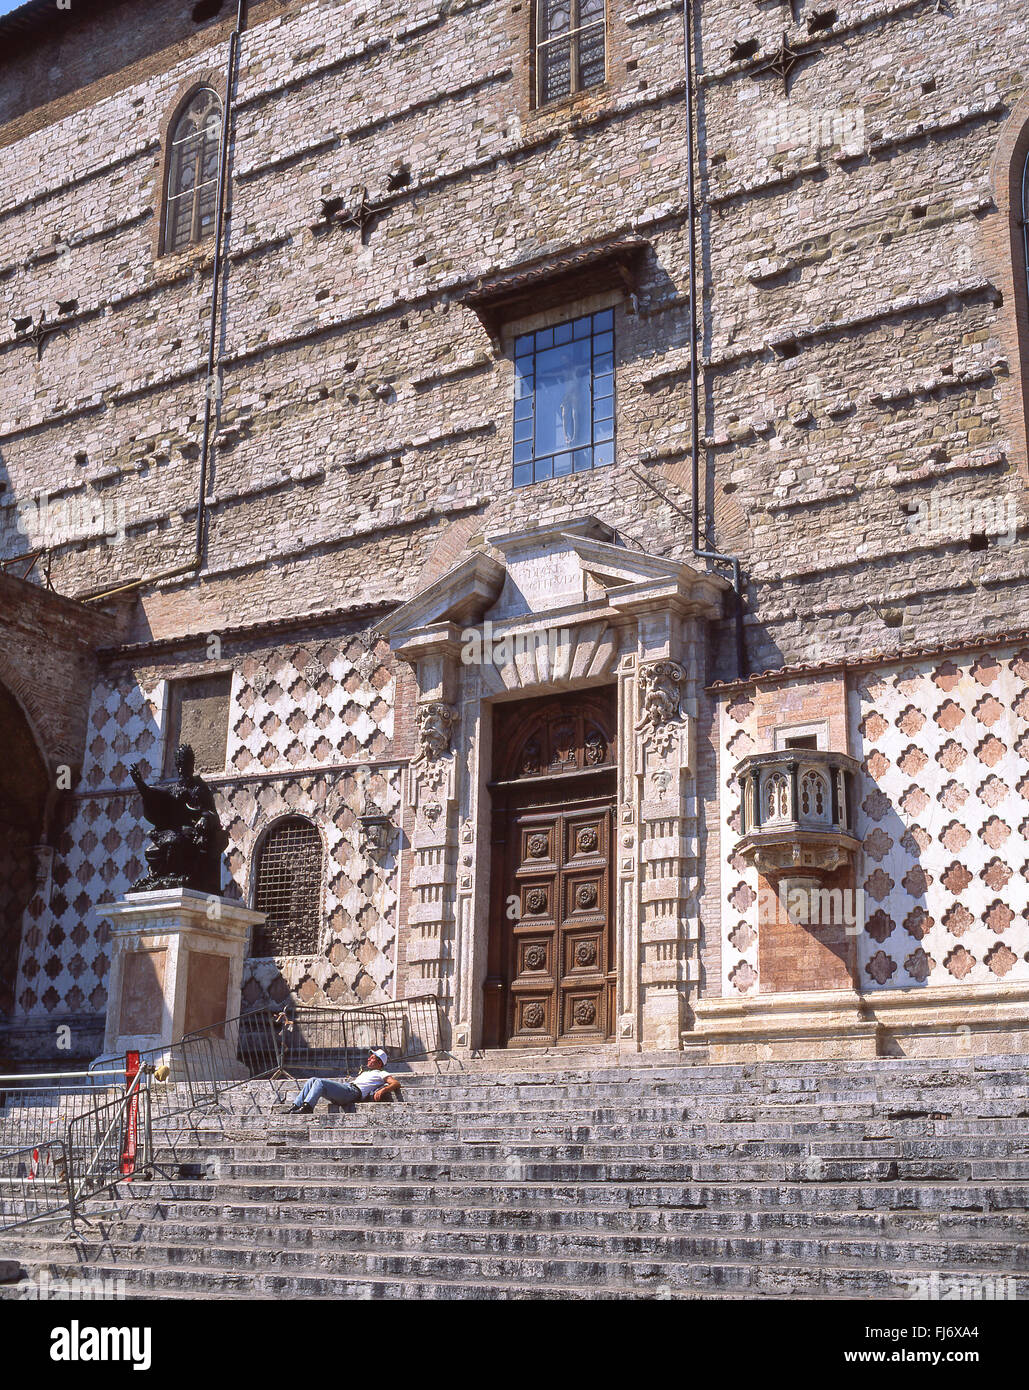 La Cathédrale de San Lorenzo, Piazza Dante, Perugia, Perugia, Ombrie Province Région, Italie Banque D'Images